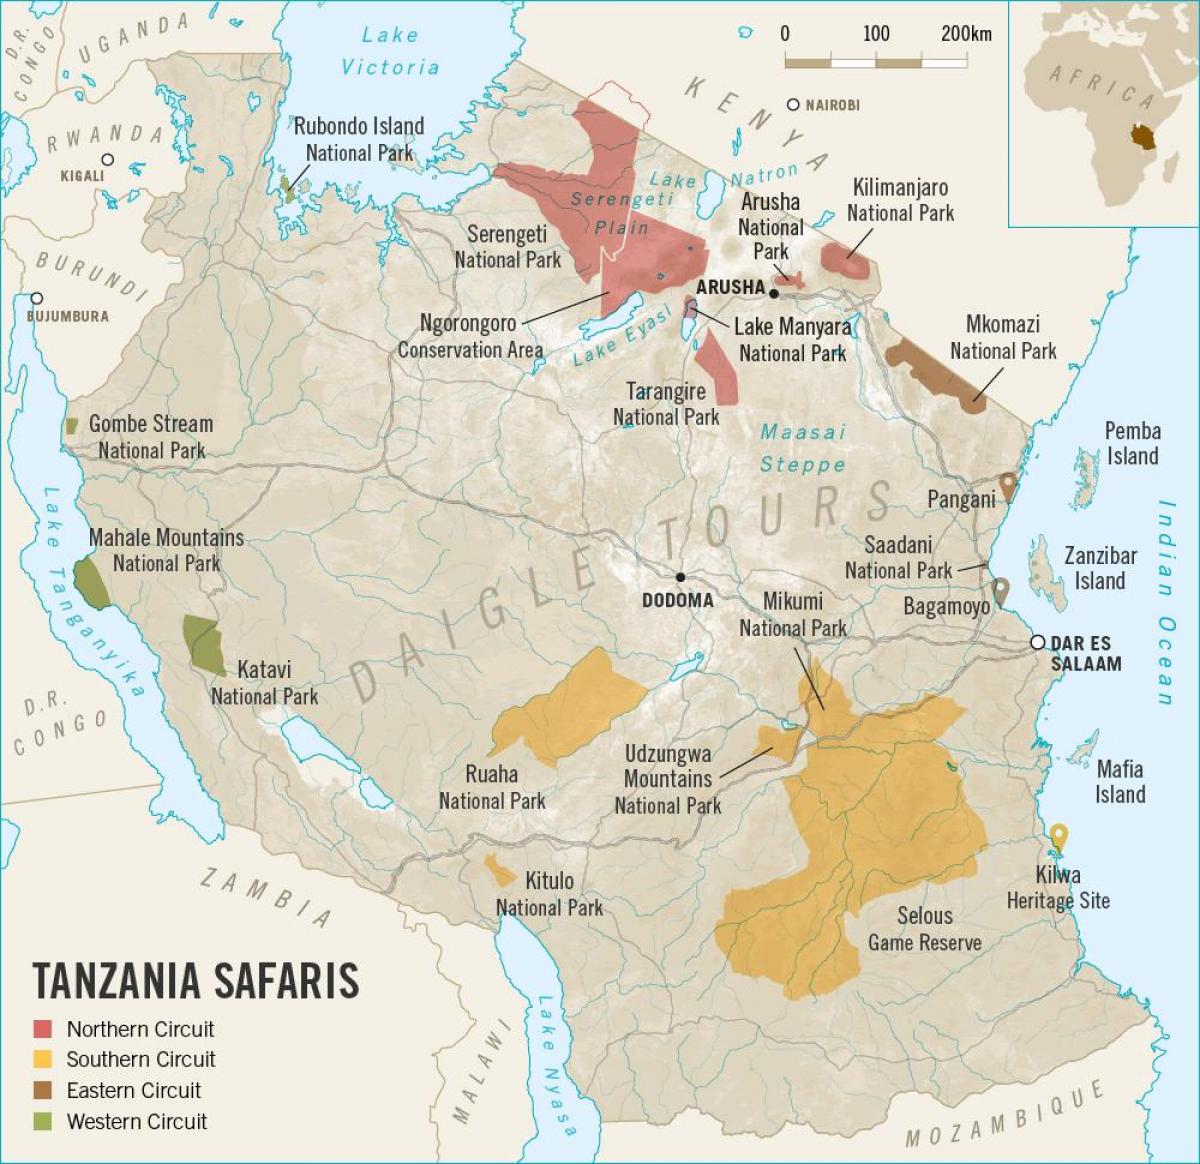 Mapa je iz tanzanije safari 